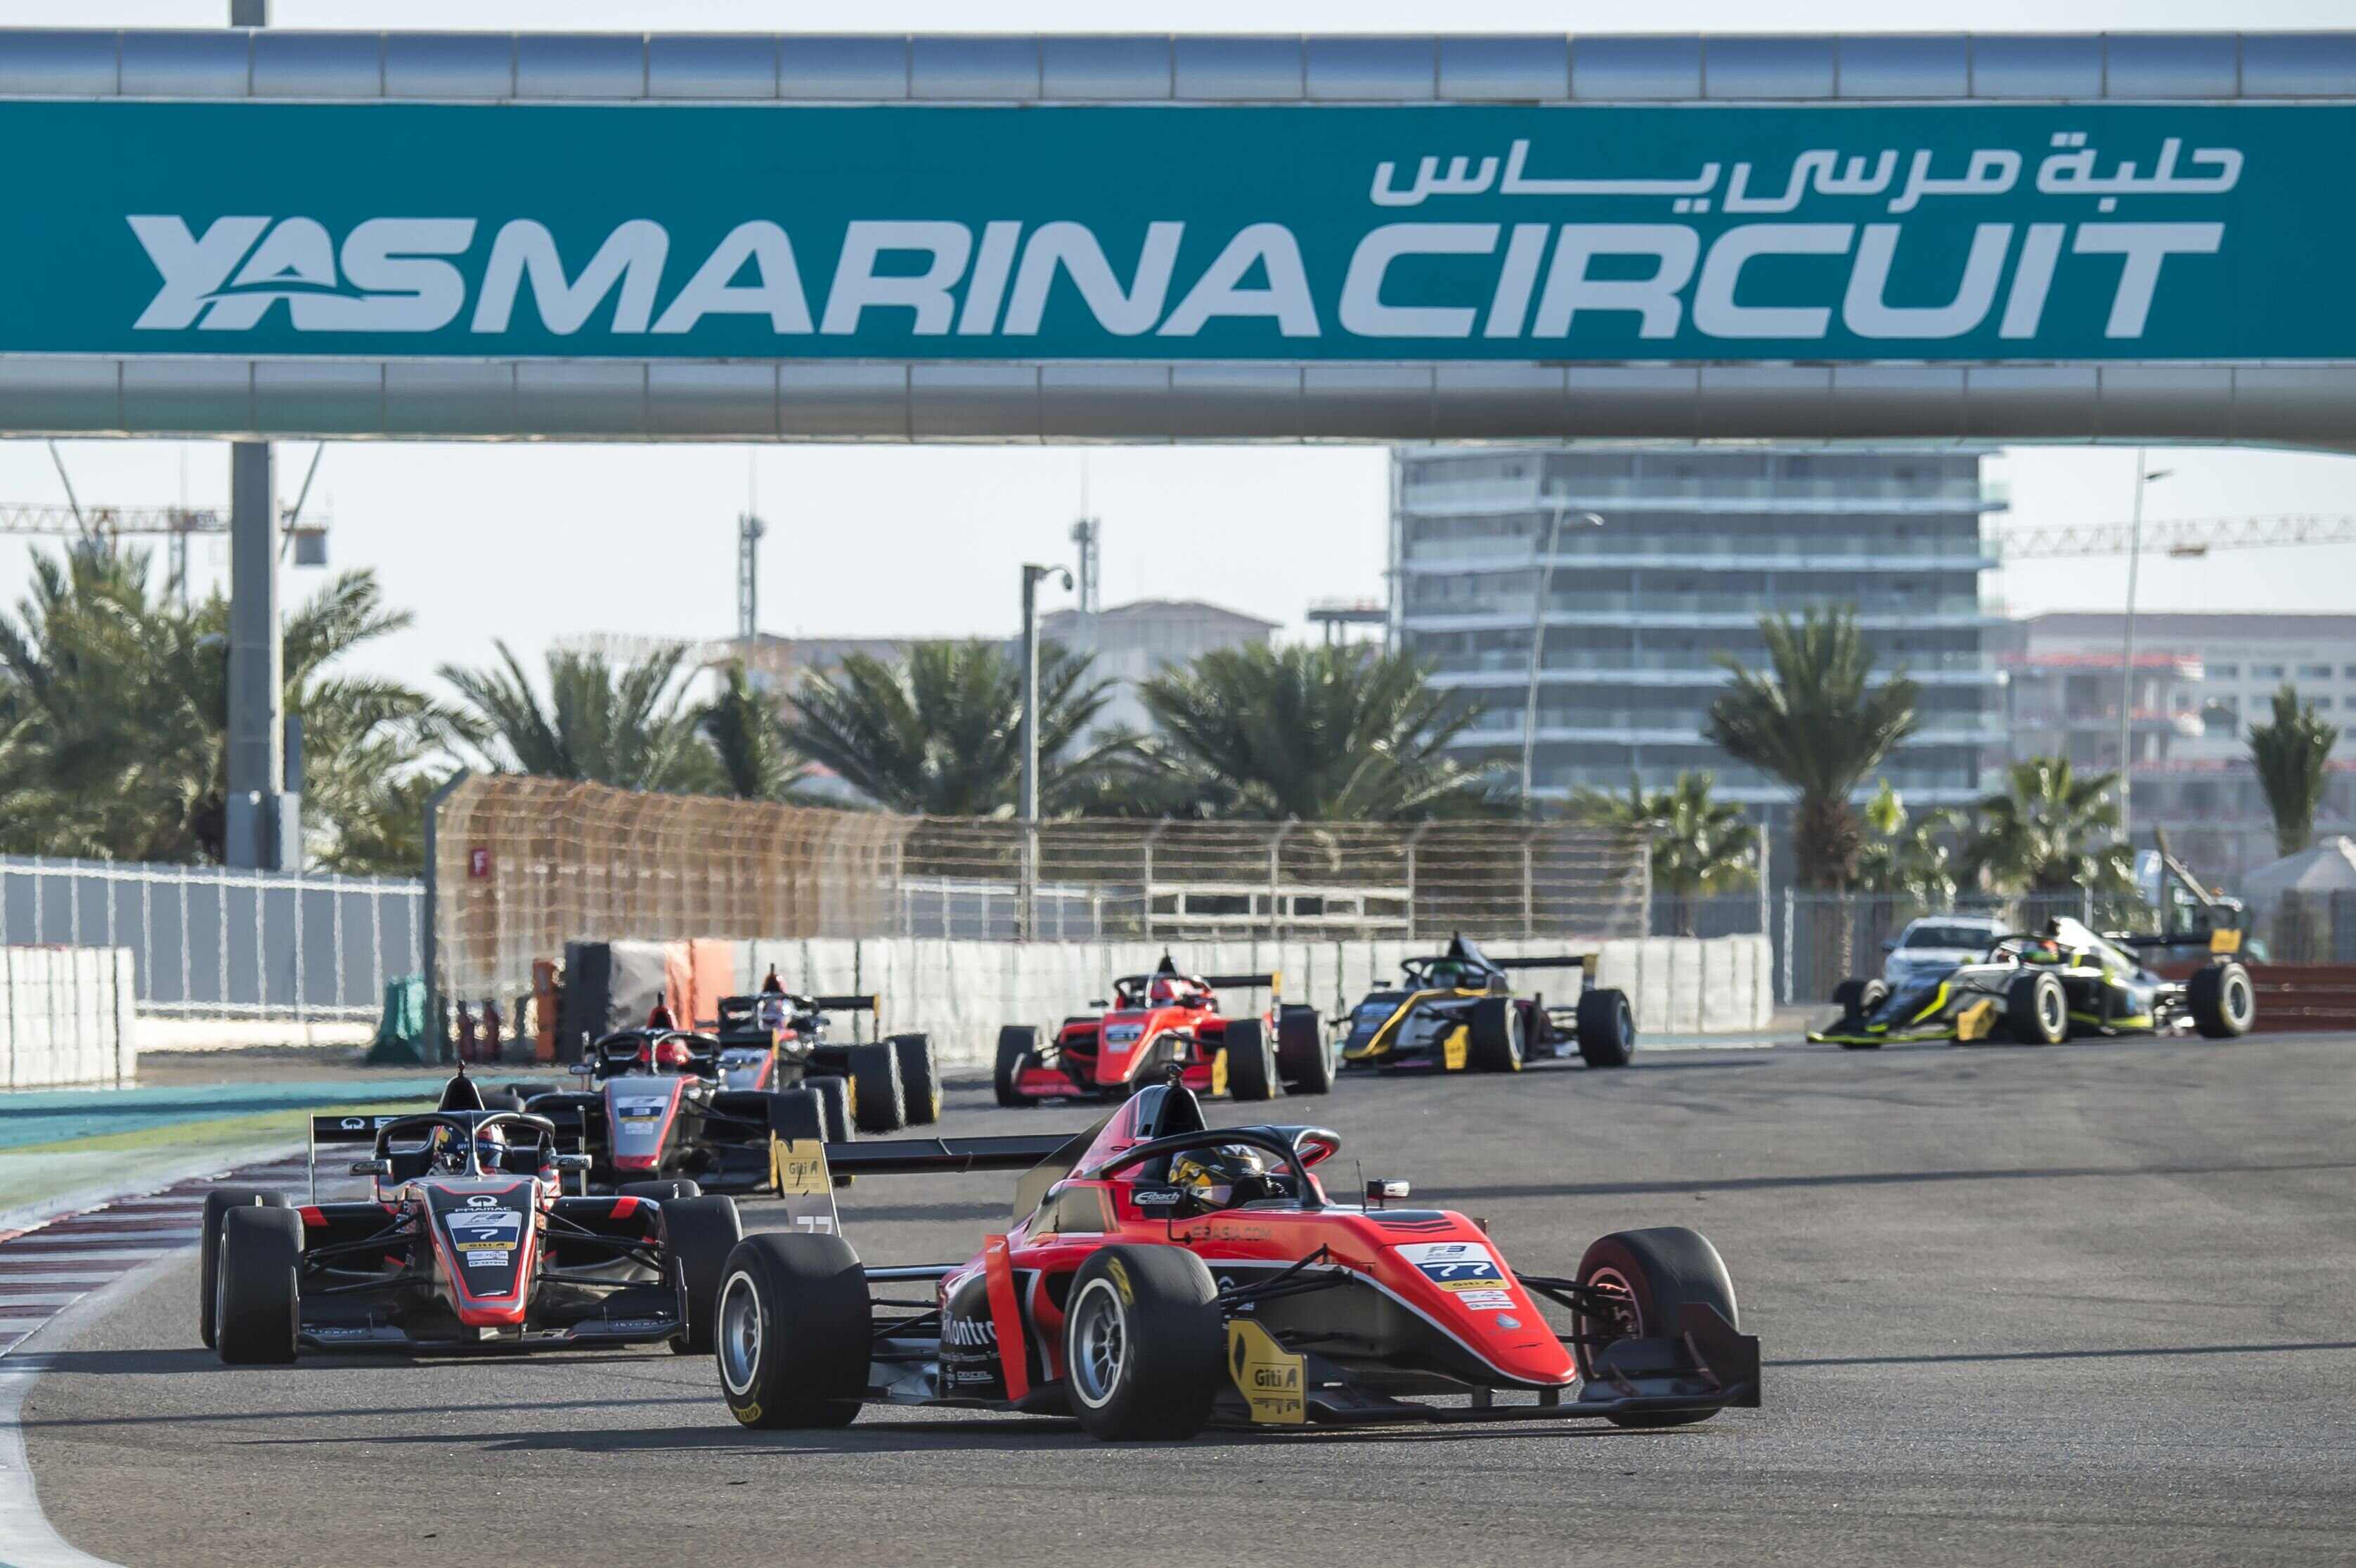 国际汽联亚洲三级方程式锦标赛赛历微调 预计有23台赛车参赛